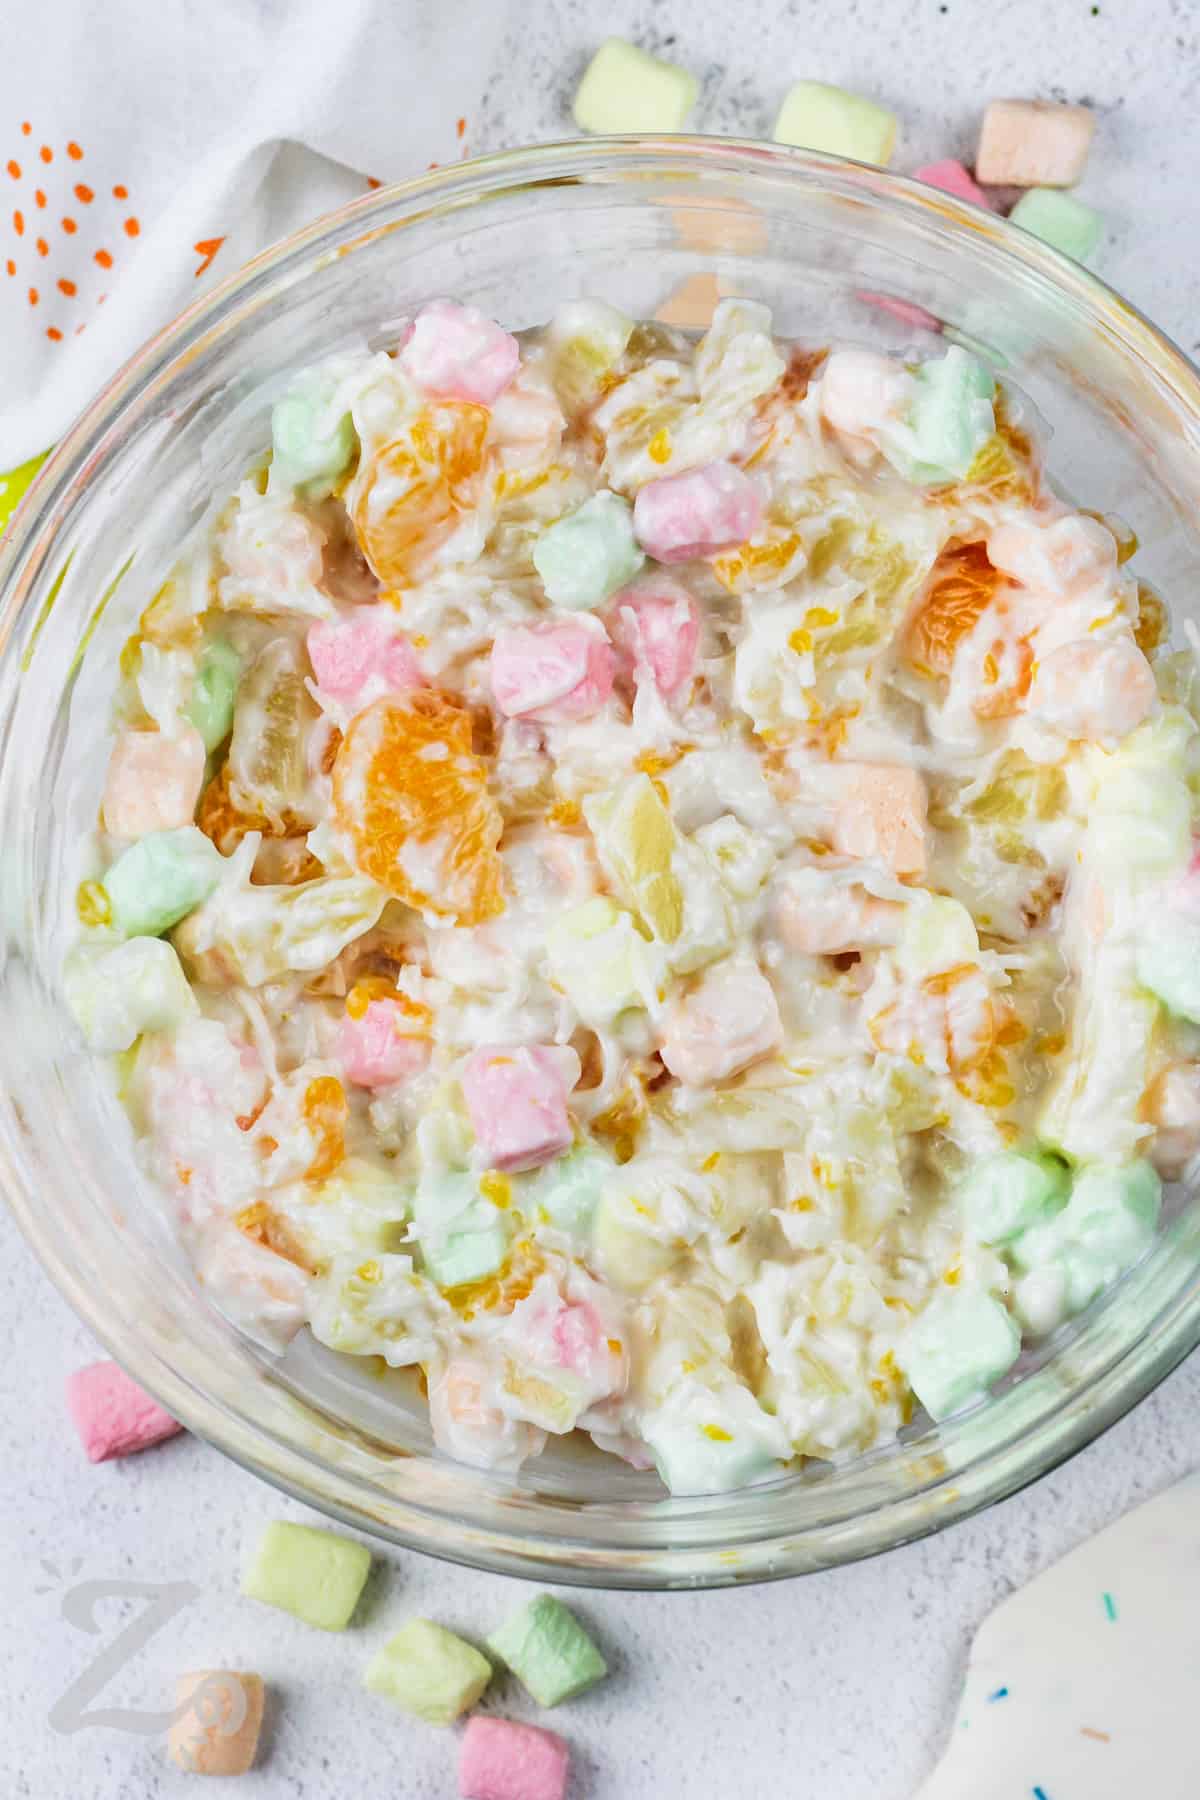 mixed ingredients to make Marshmallow Salad